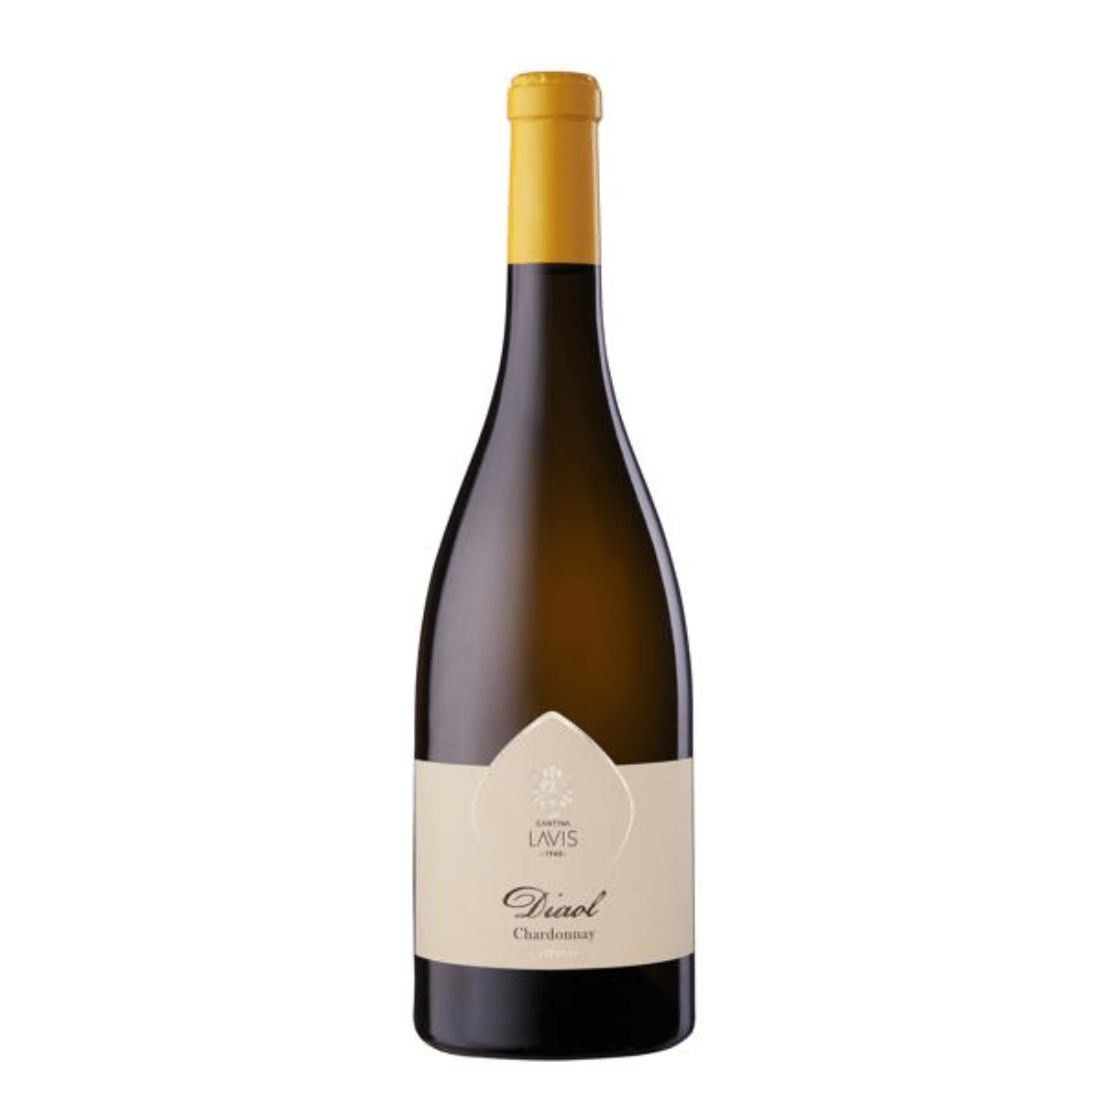 La Vis Chardonnay 2020 Doc Trentino Diaol - La Vis